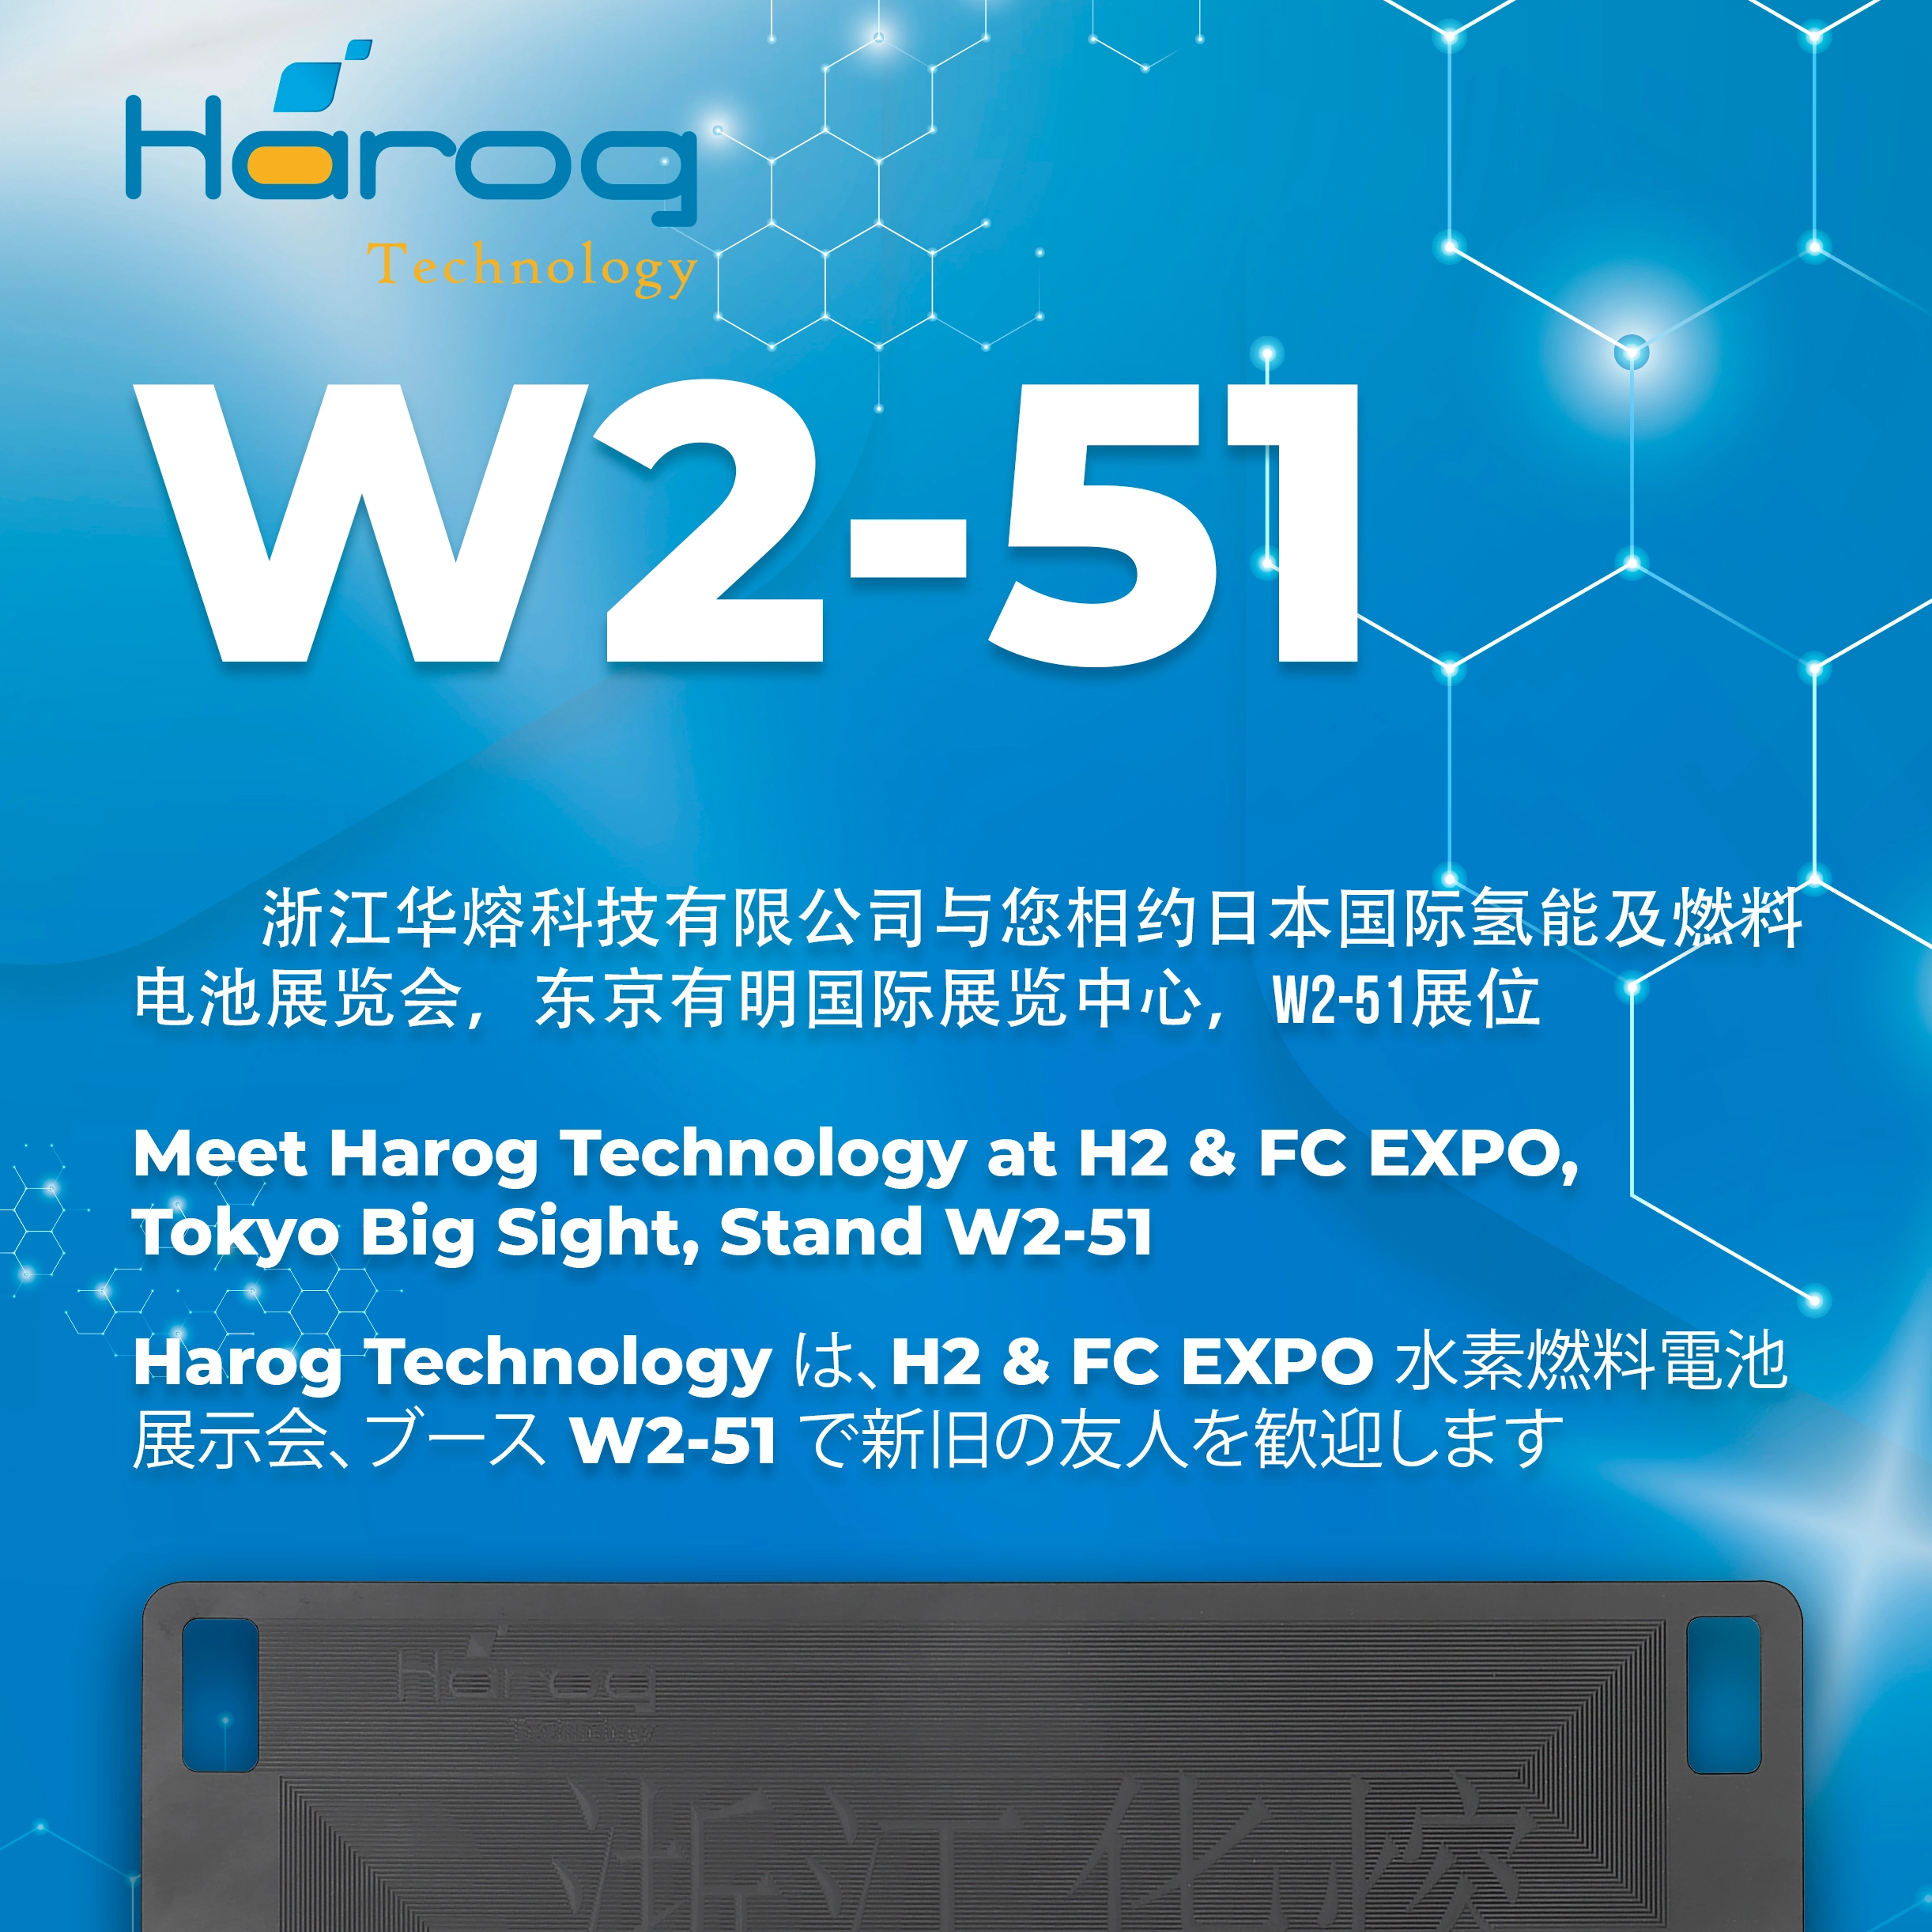 Meet Harog at H2 & FC EXPO Tokyo at W2-51